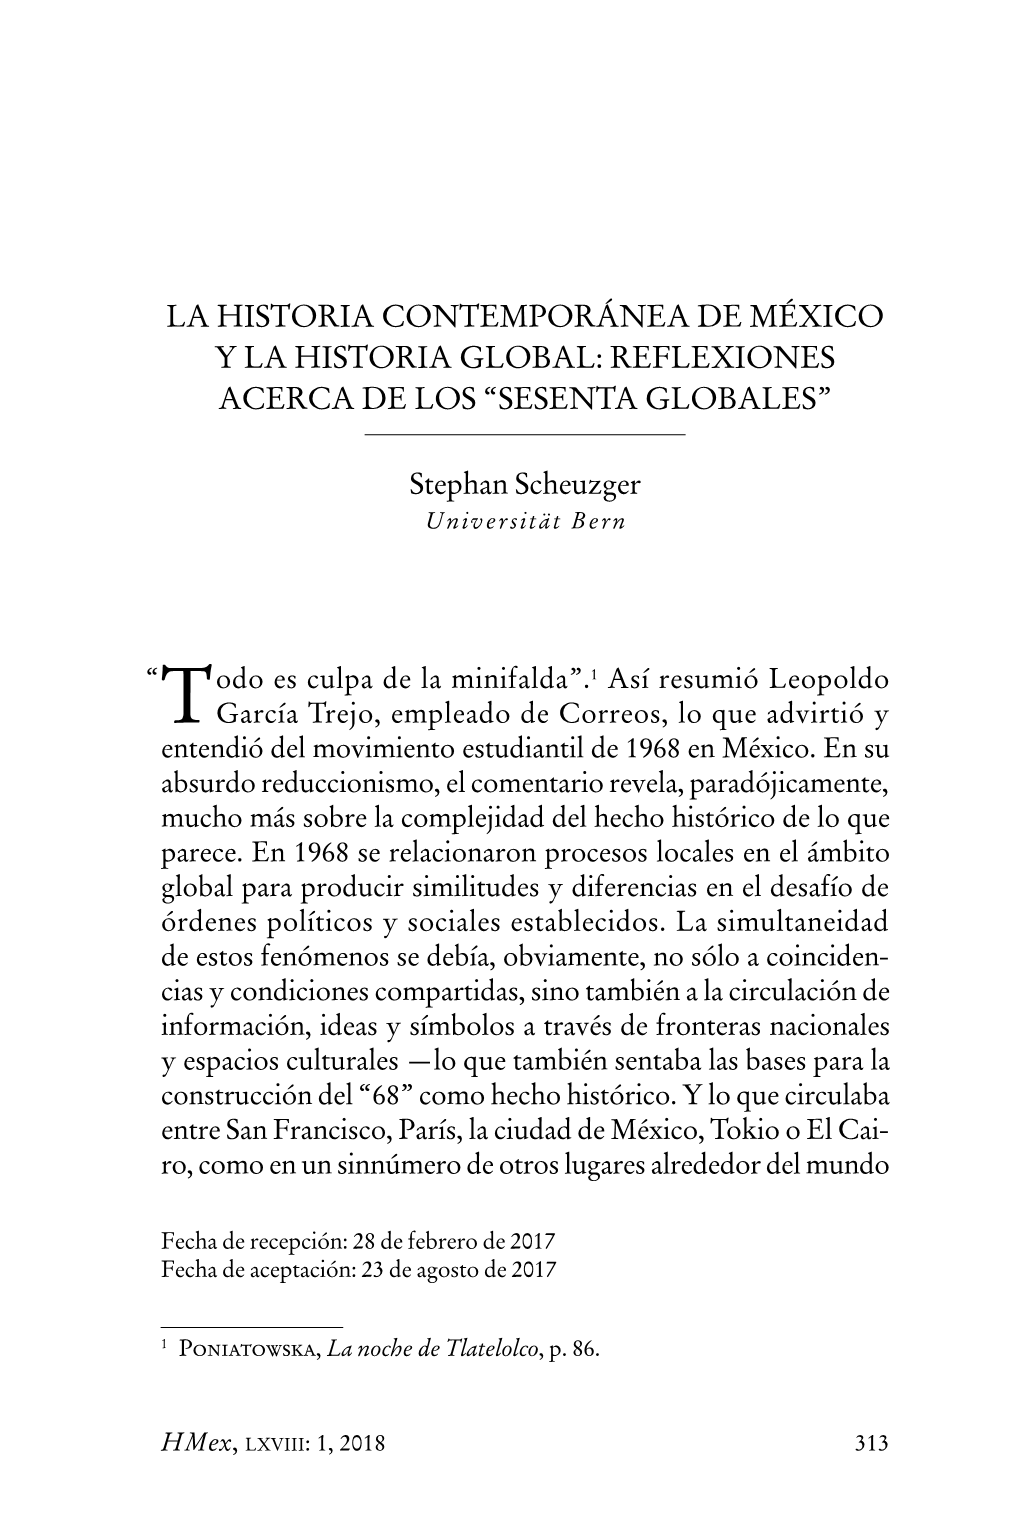 La Historia Contemporánea De México Y La Historia Global: Reflexiones Acerca De Los “Sesenta Globales”